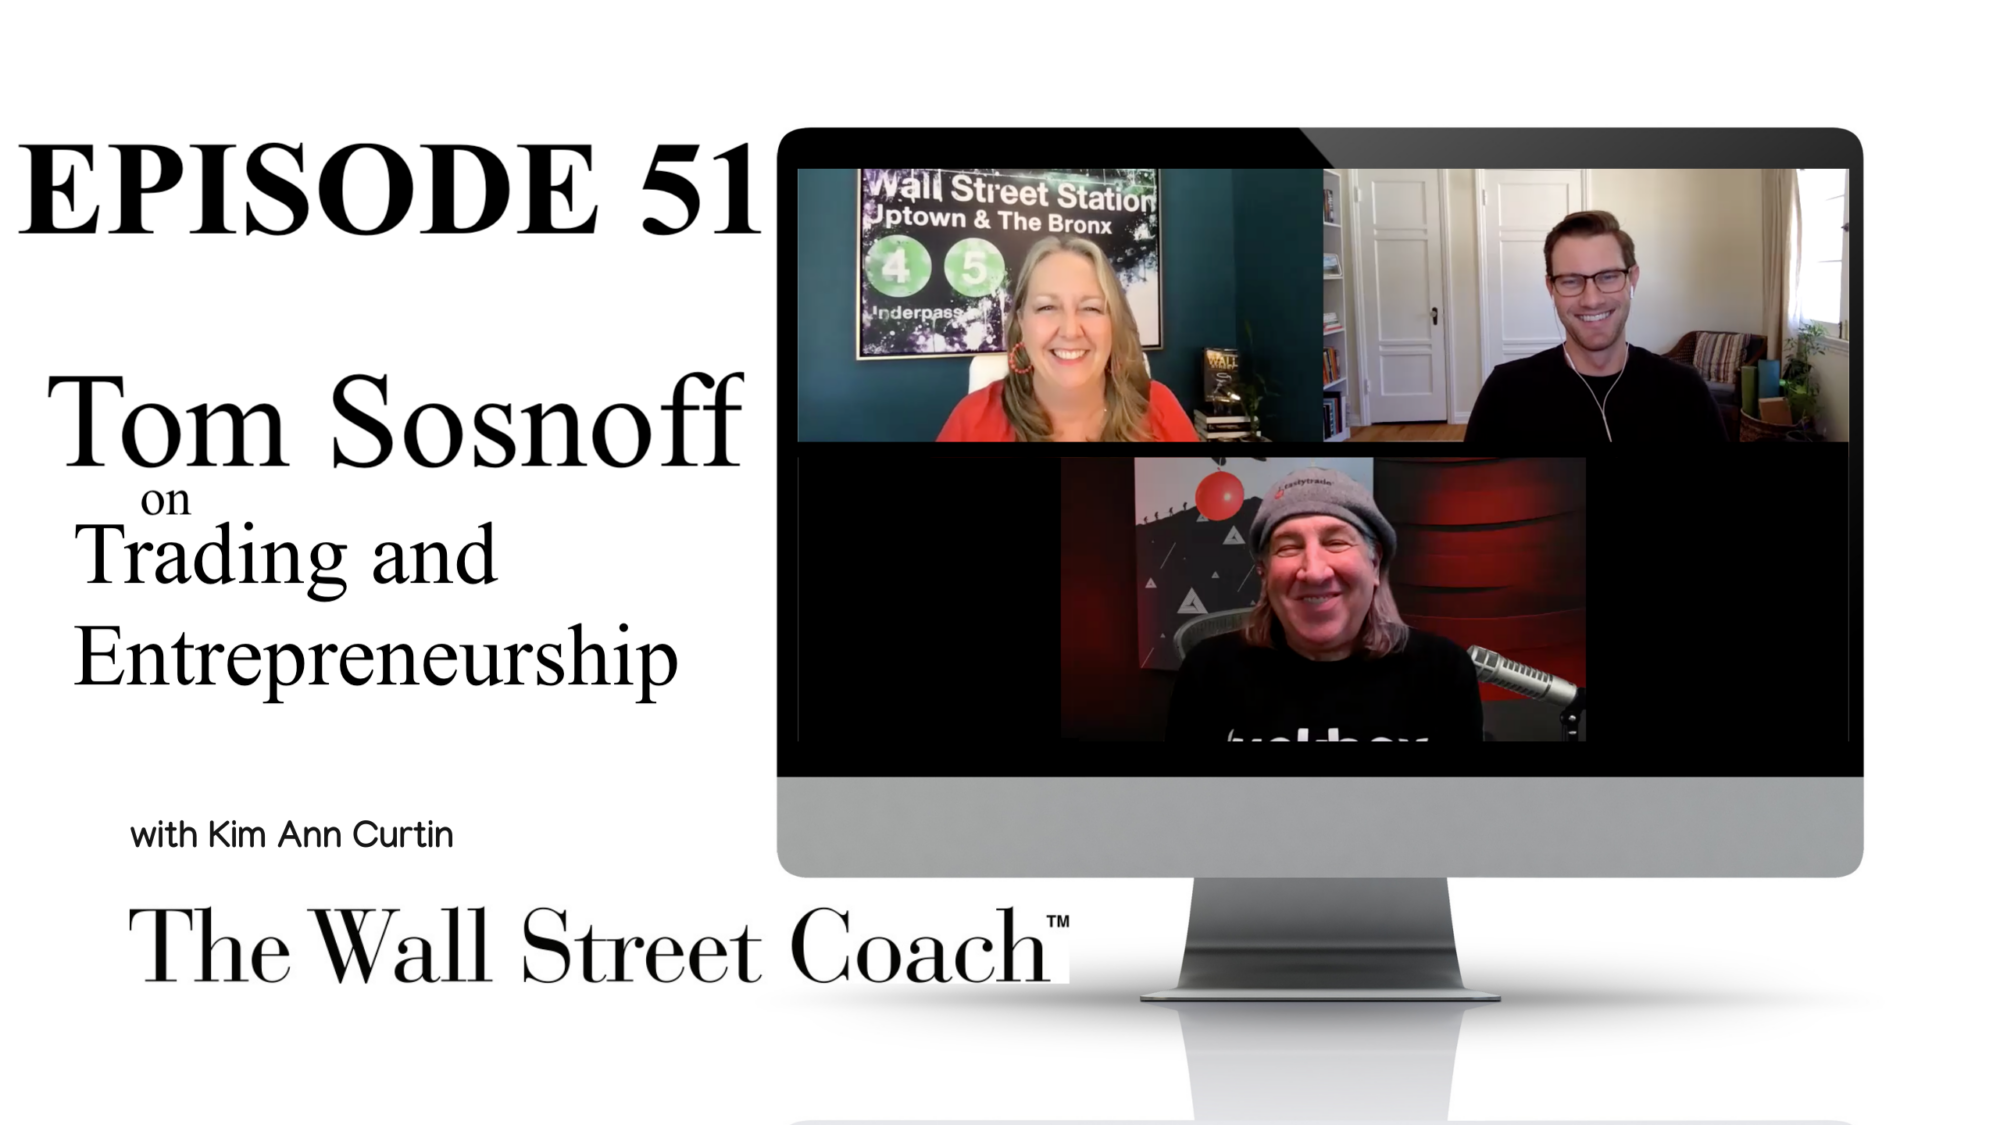 Episode 51: Tom Sosnoff on Trading and Entrepreneurship